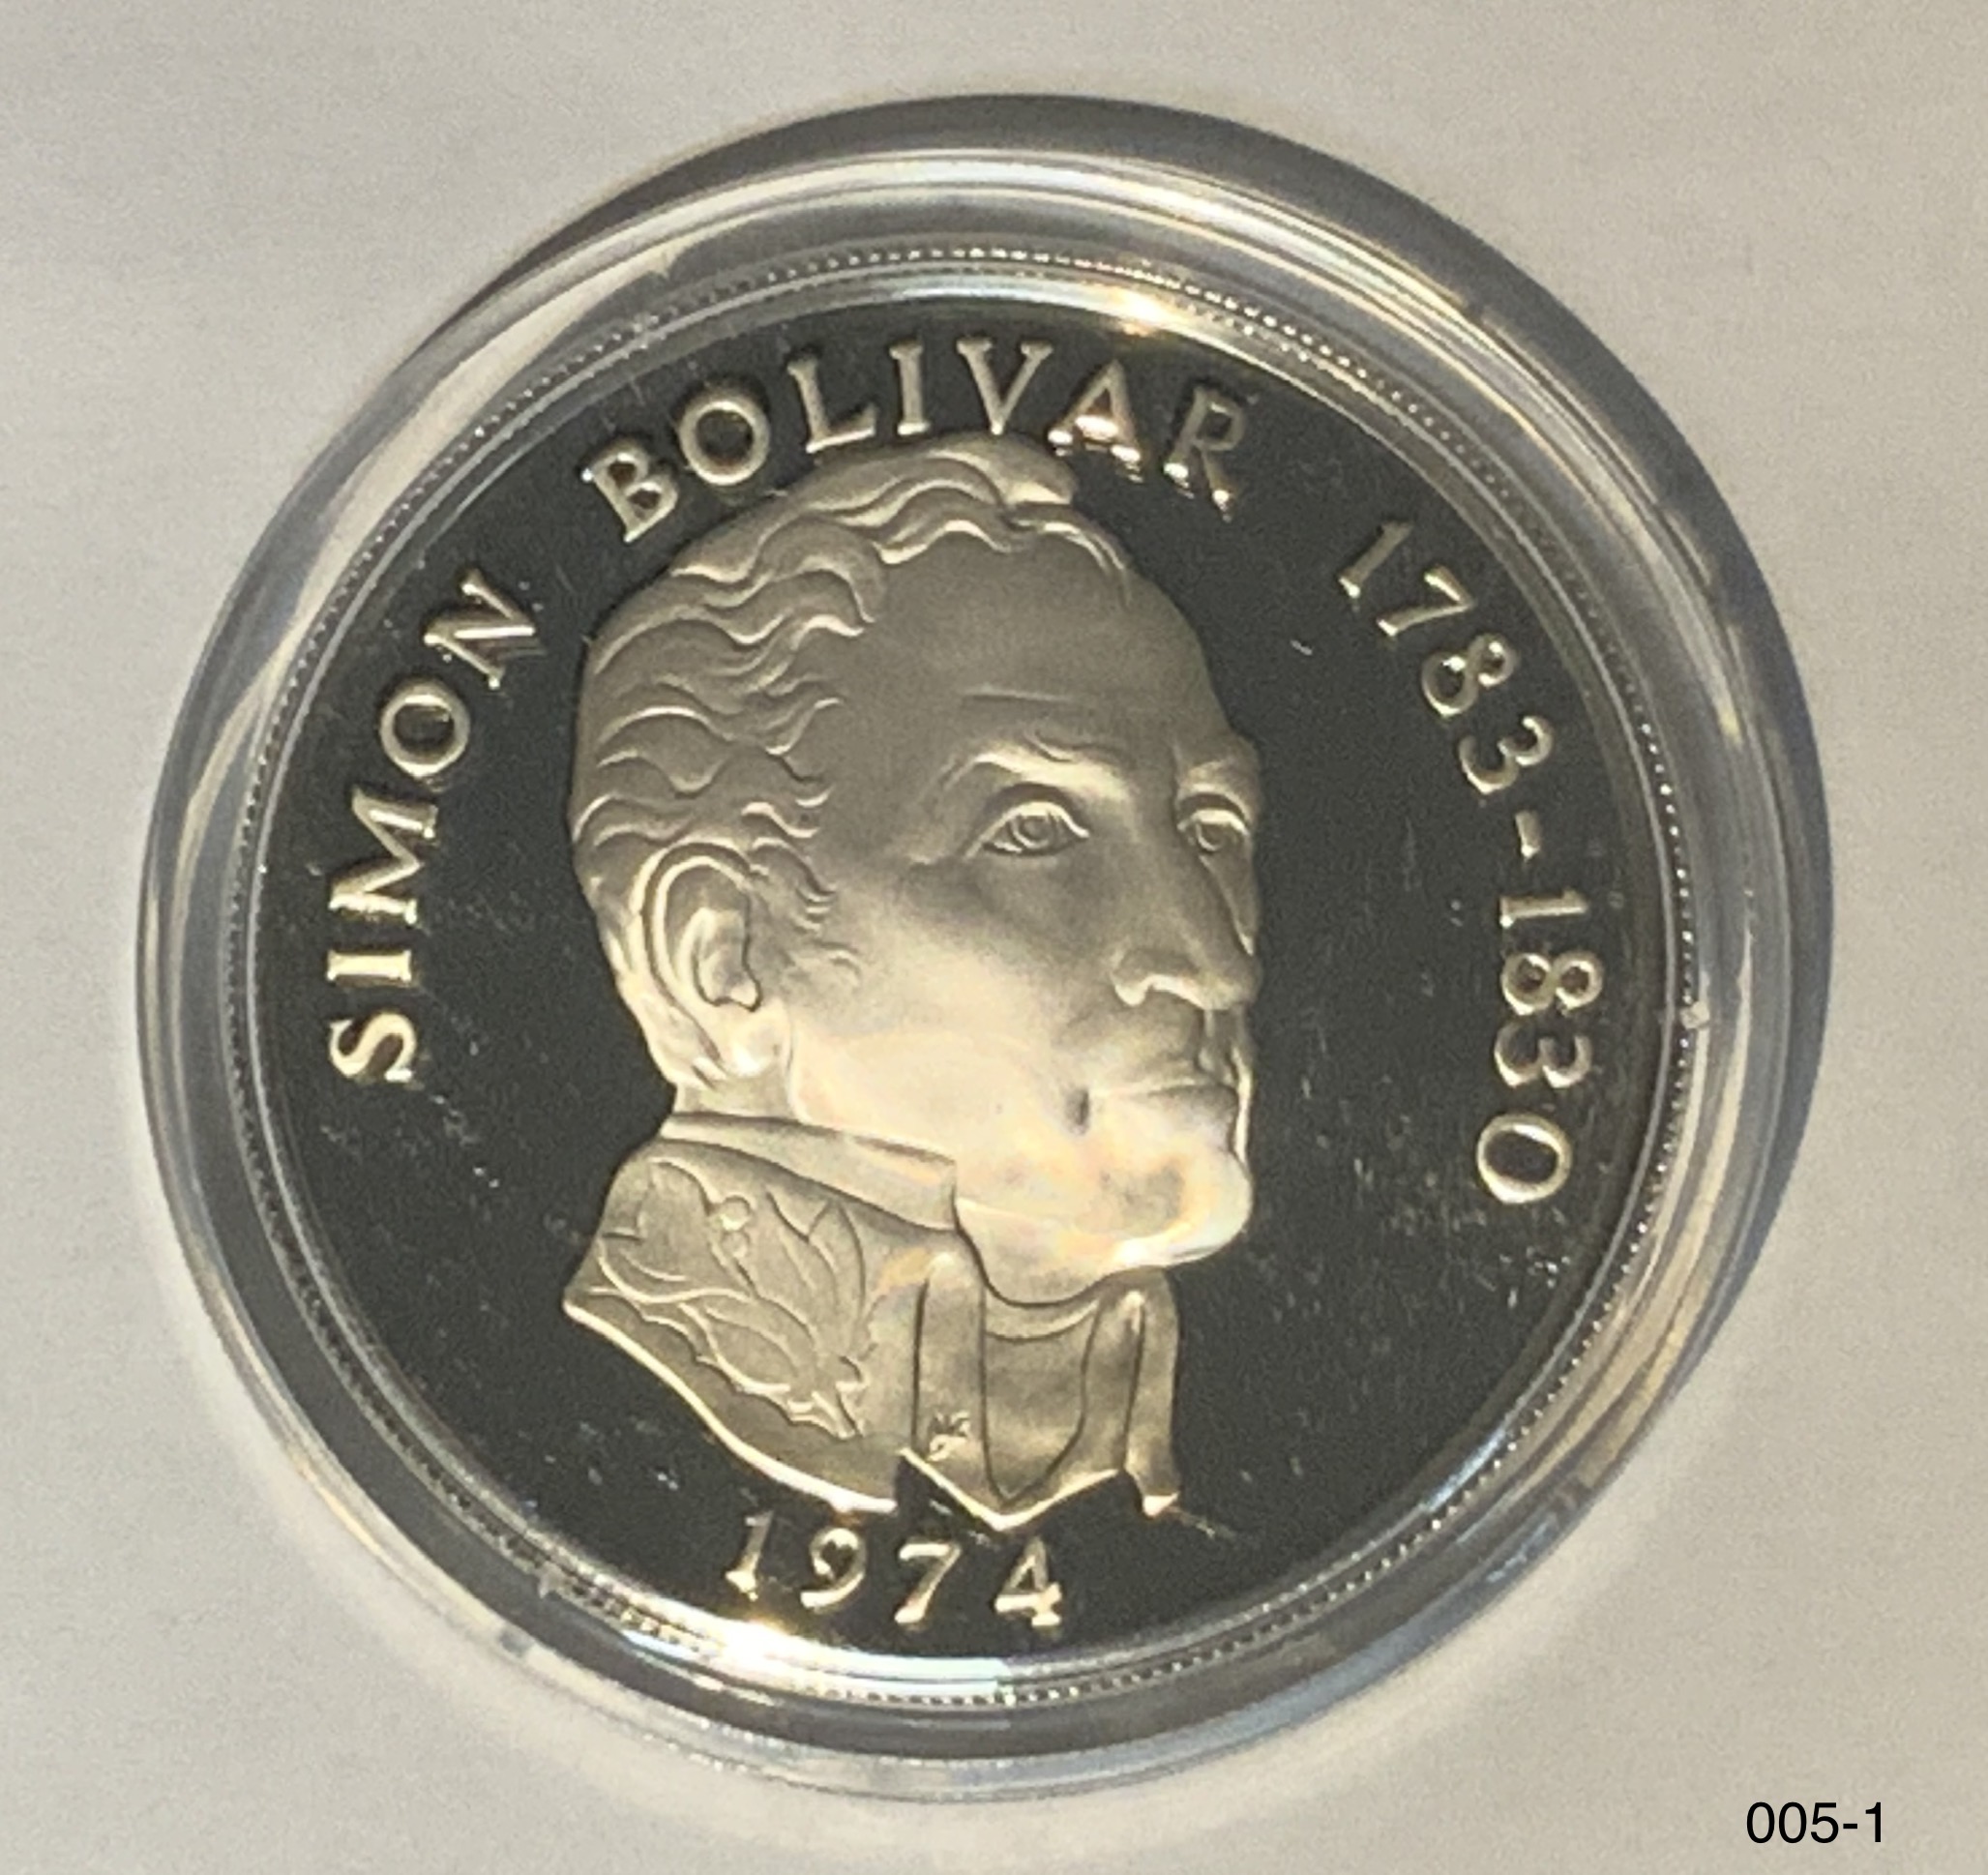 パナマ共和国 20バルボア銀貨 1973年 - コレクション